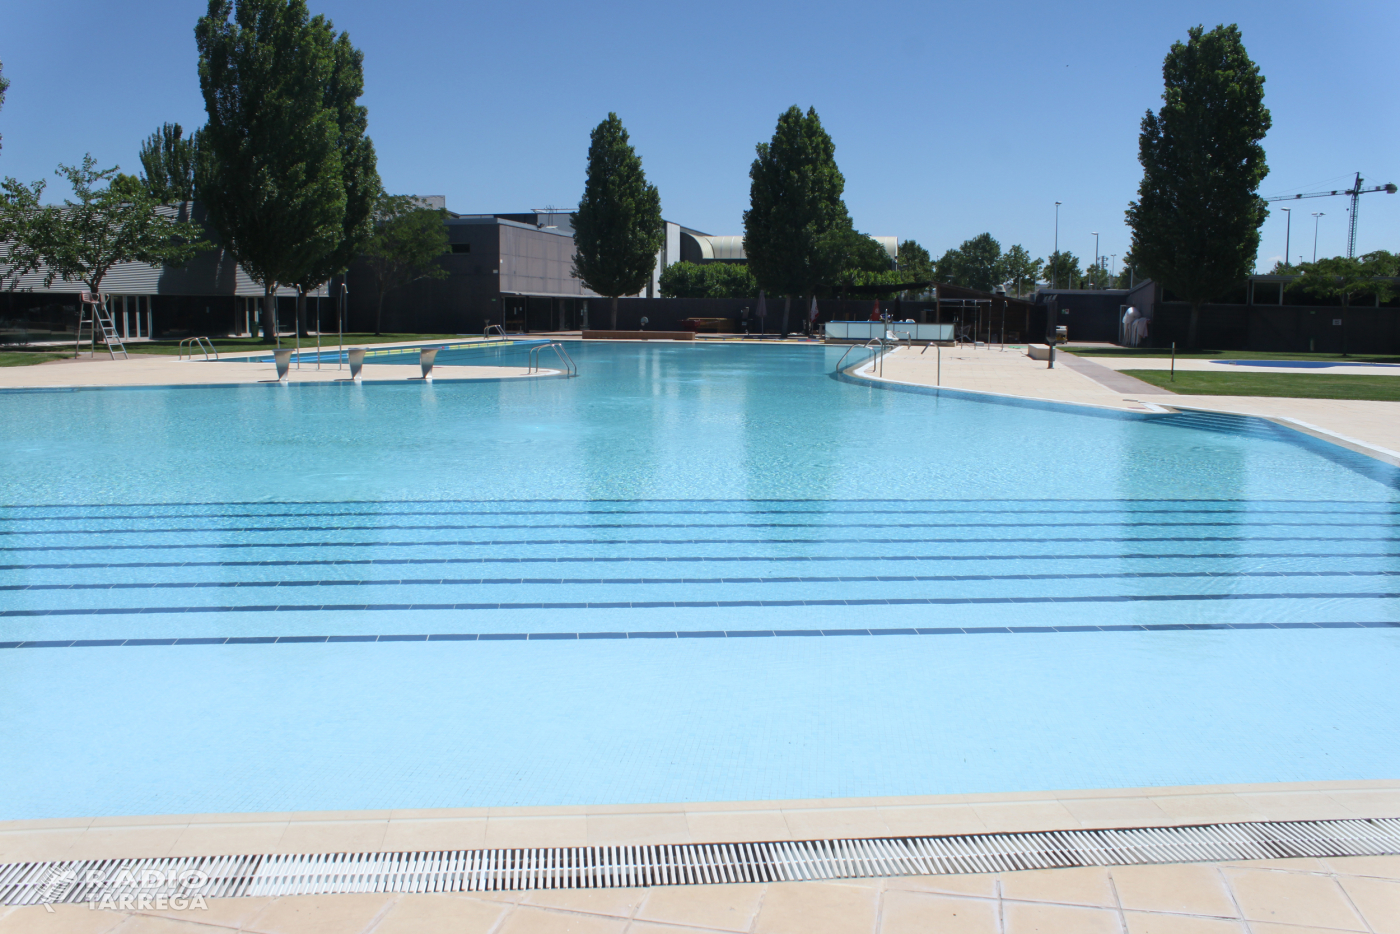 L'Ajuntament de Tàrrega treballa en fase embrionària la reobertura de les piscines municipals d'estiu